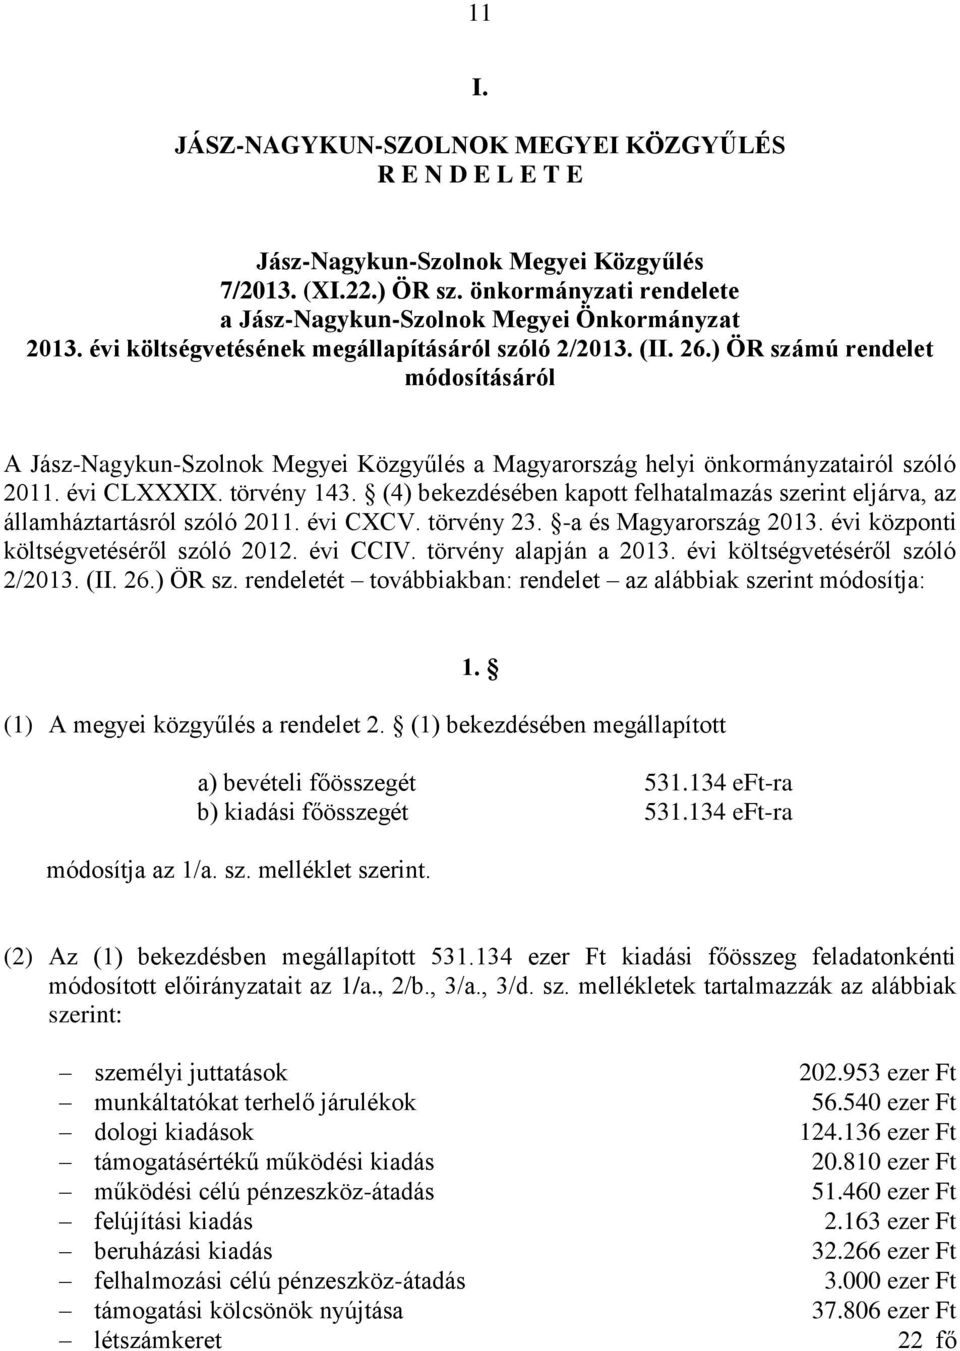 (4) bekezdésében kapott felhatalmazás szerint eljárva, az államháztartásról szóló 2011. évi CXCV. törvény 23. -a és Magyarország 2013. évi központi költségvetéséről szóló 2012. évi CCIV.